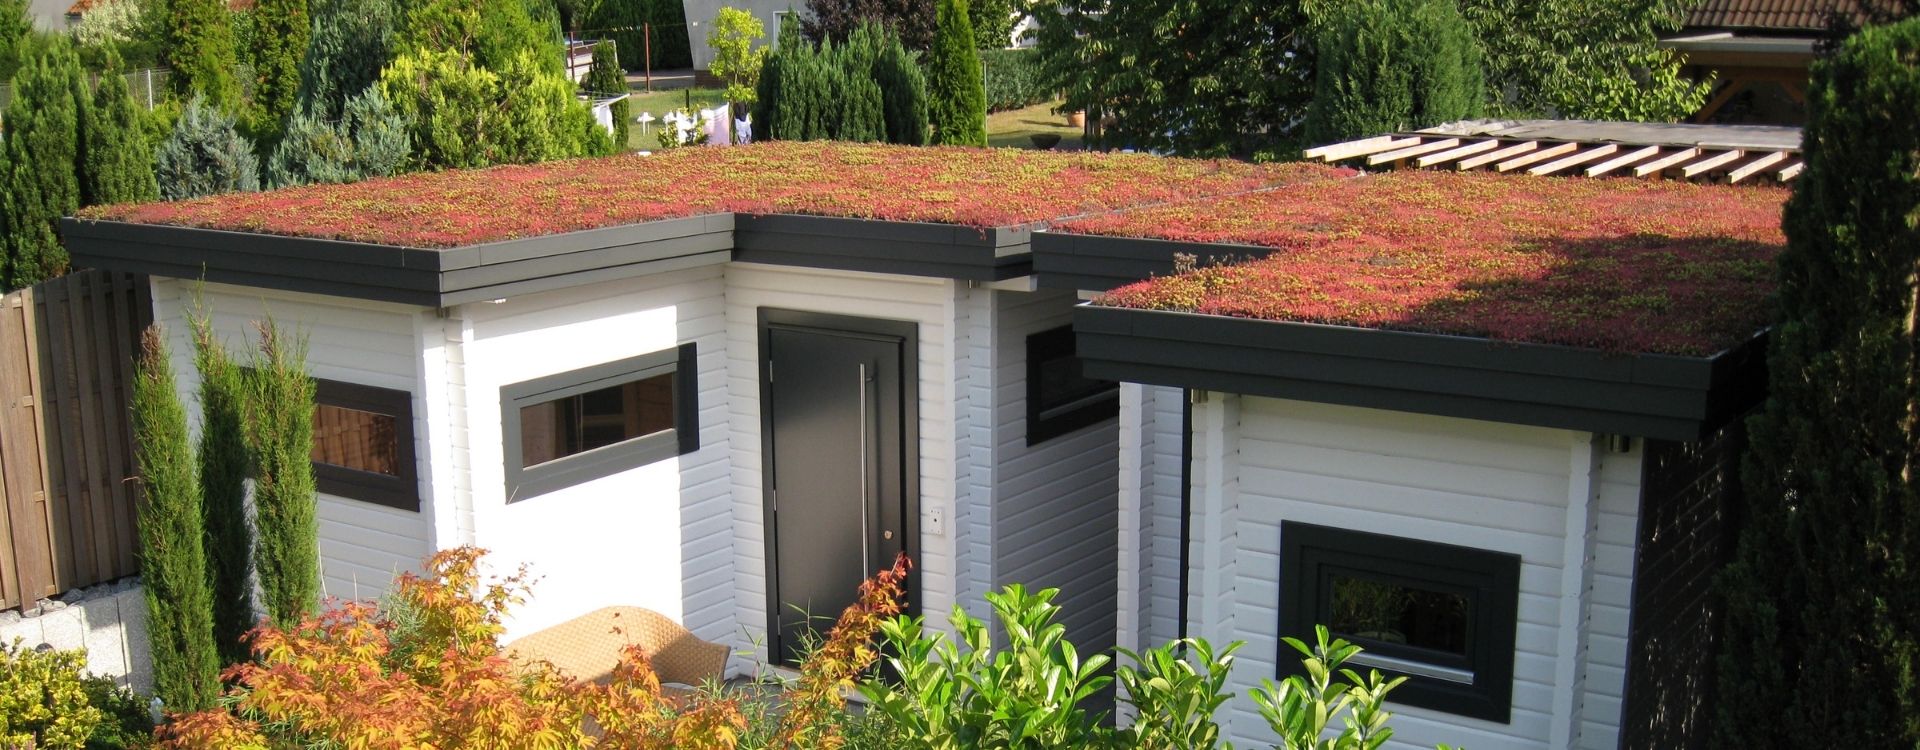 Flachdachbegrünung auf einem Gartenhaus - TOPGREEN-Gründachsysteme